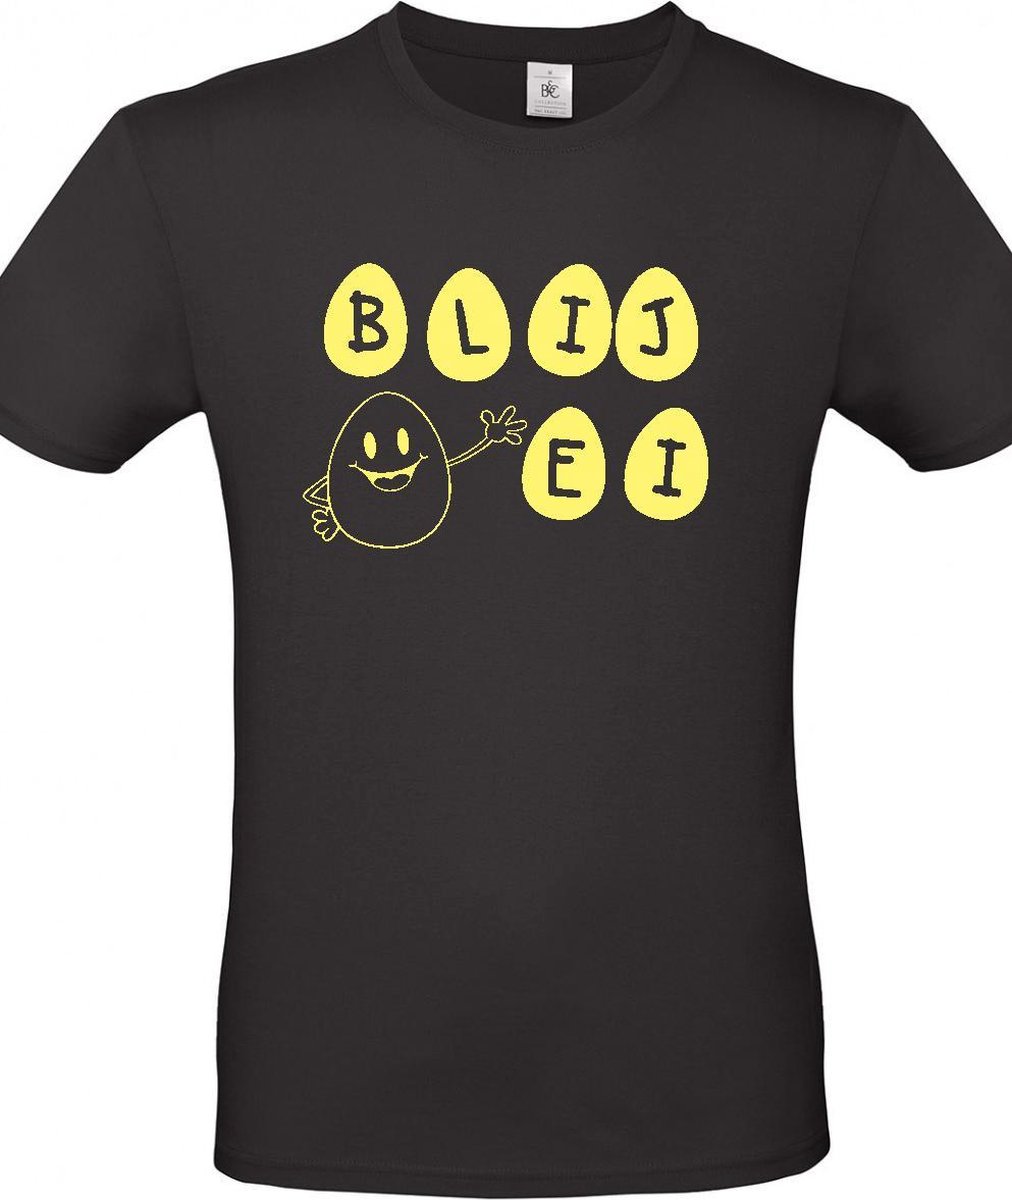 T-shirt met opdruk “Blij Ei” –  Een zwart shirt met gele opdruk - Merk B&C – Herojodeals